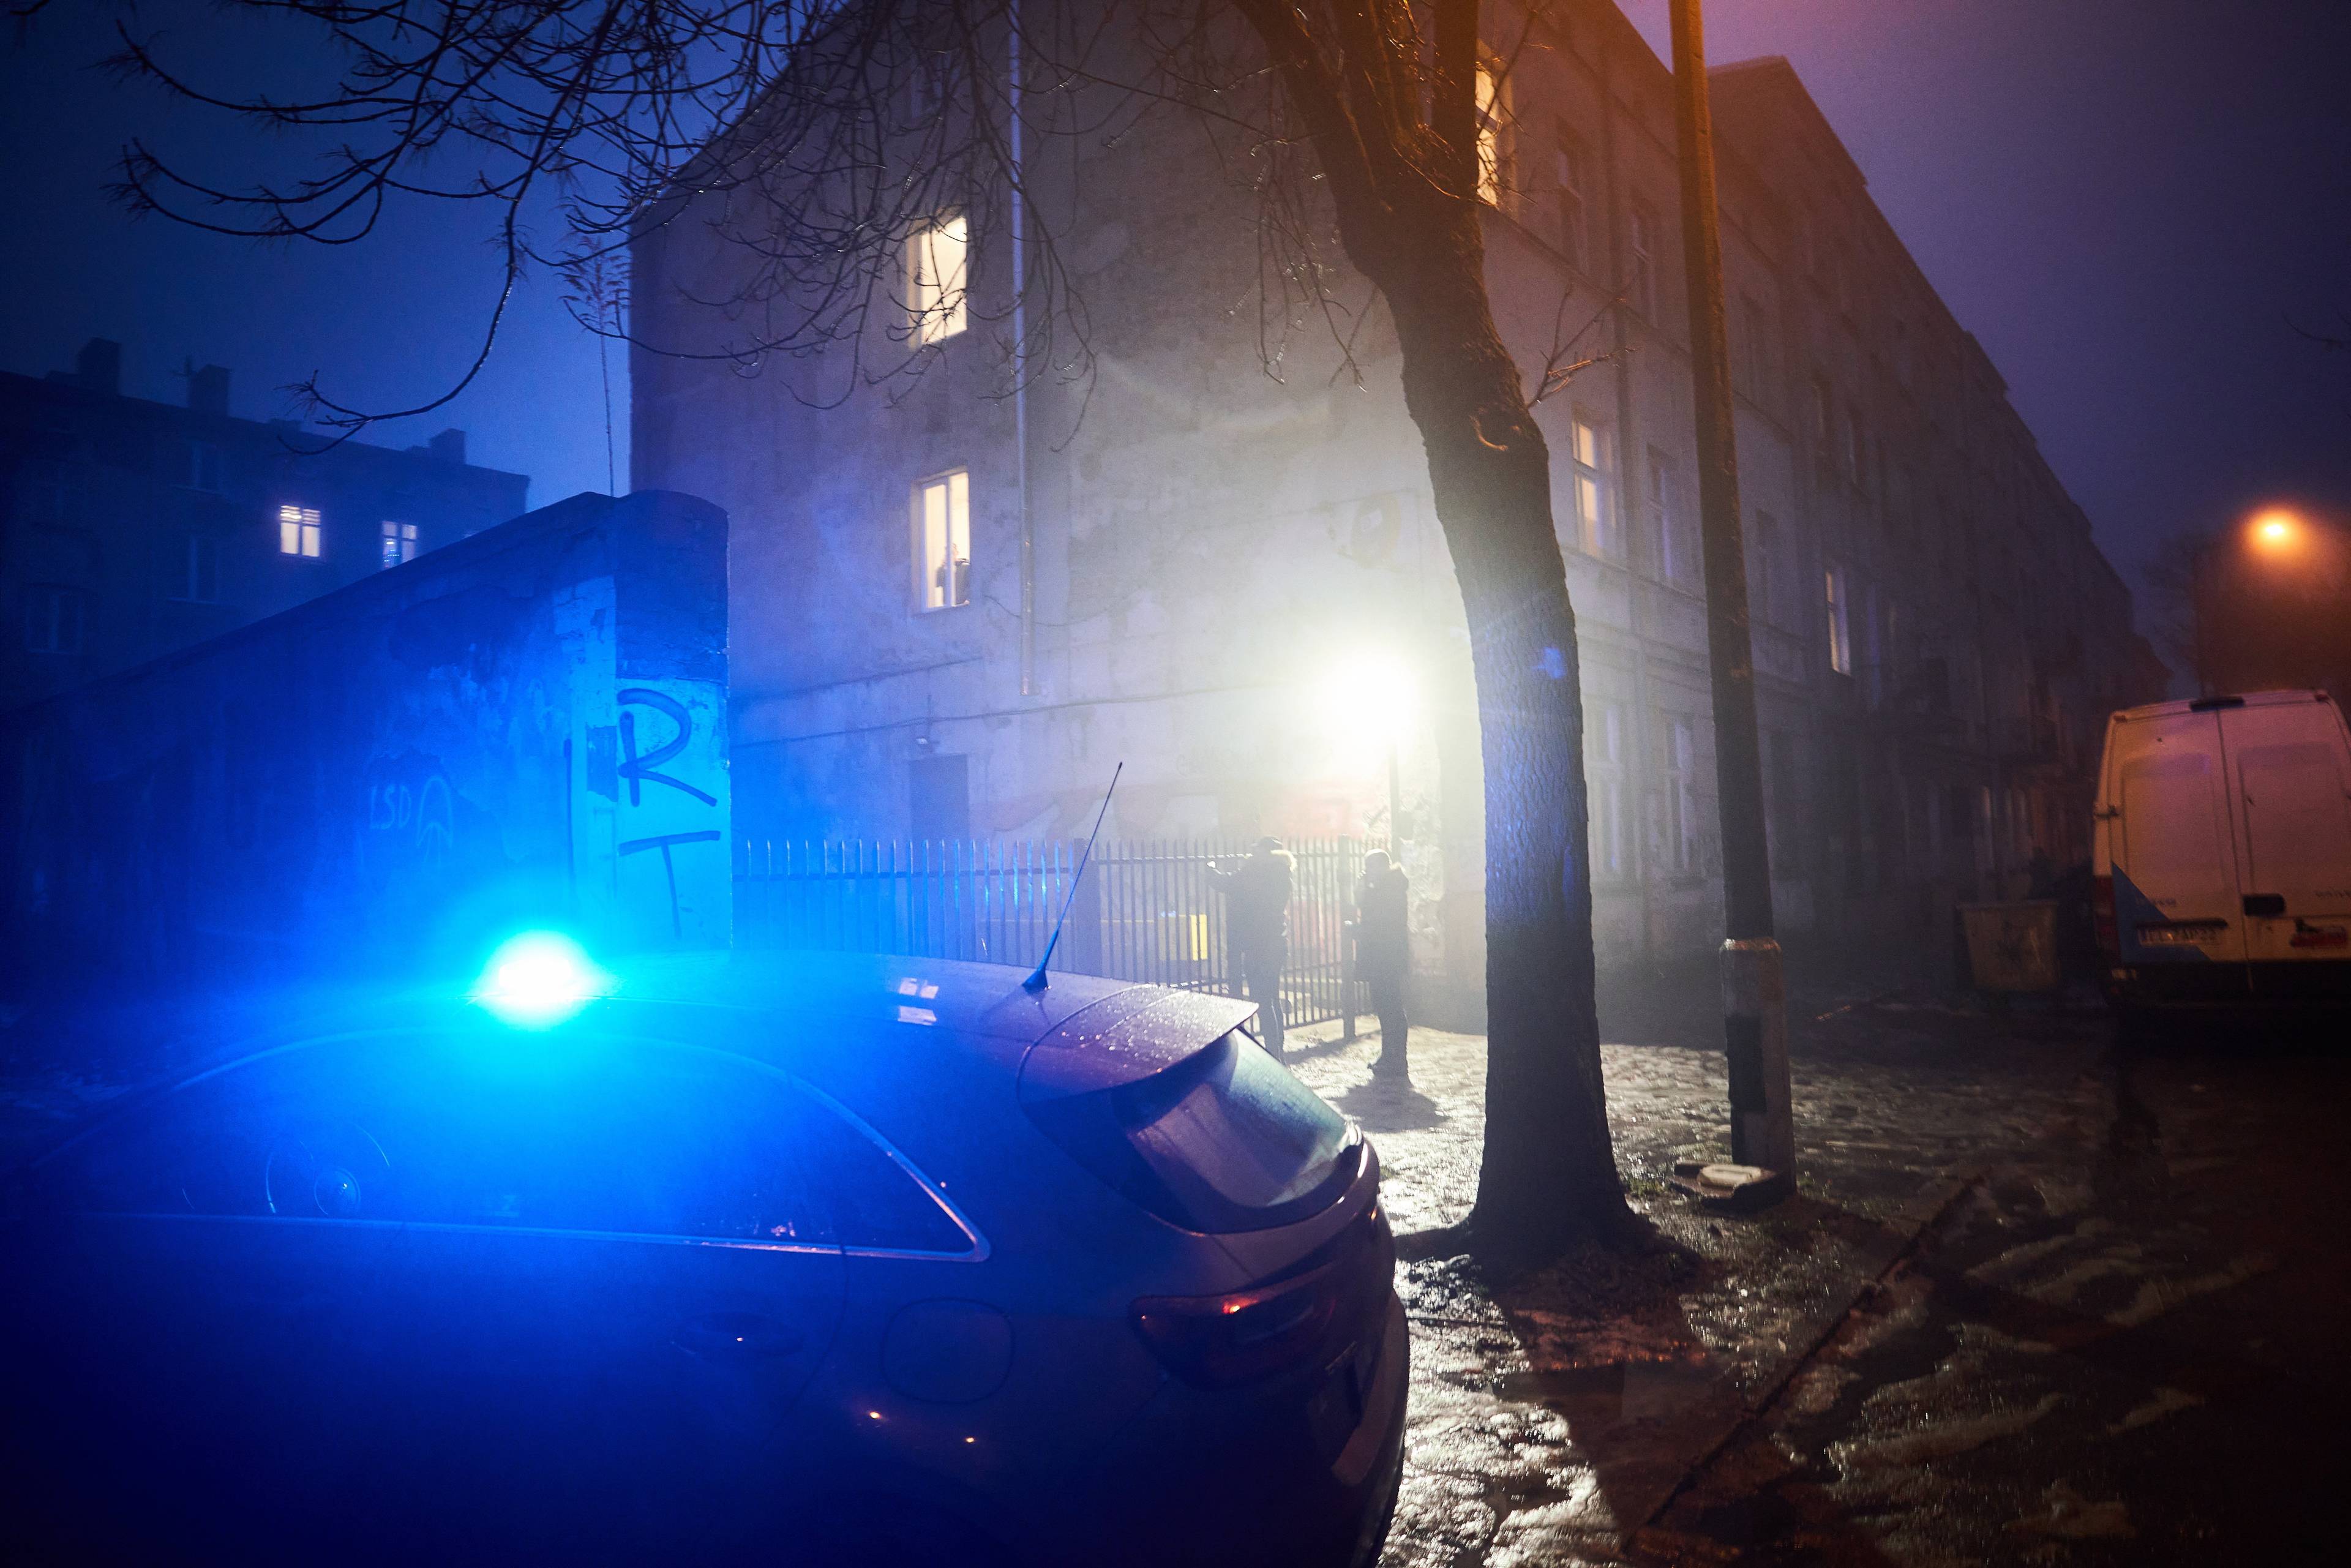 Samochód policyjny z intensywnie niebieskim światłem pod domem o zmierzchu